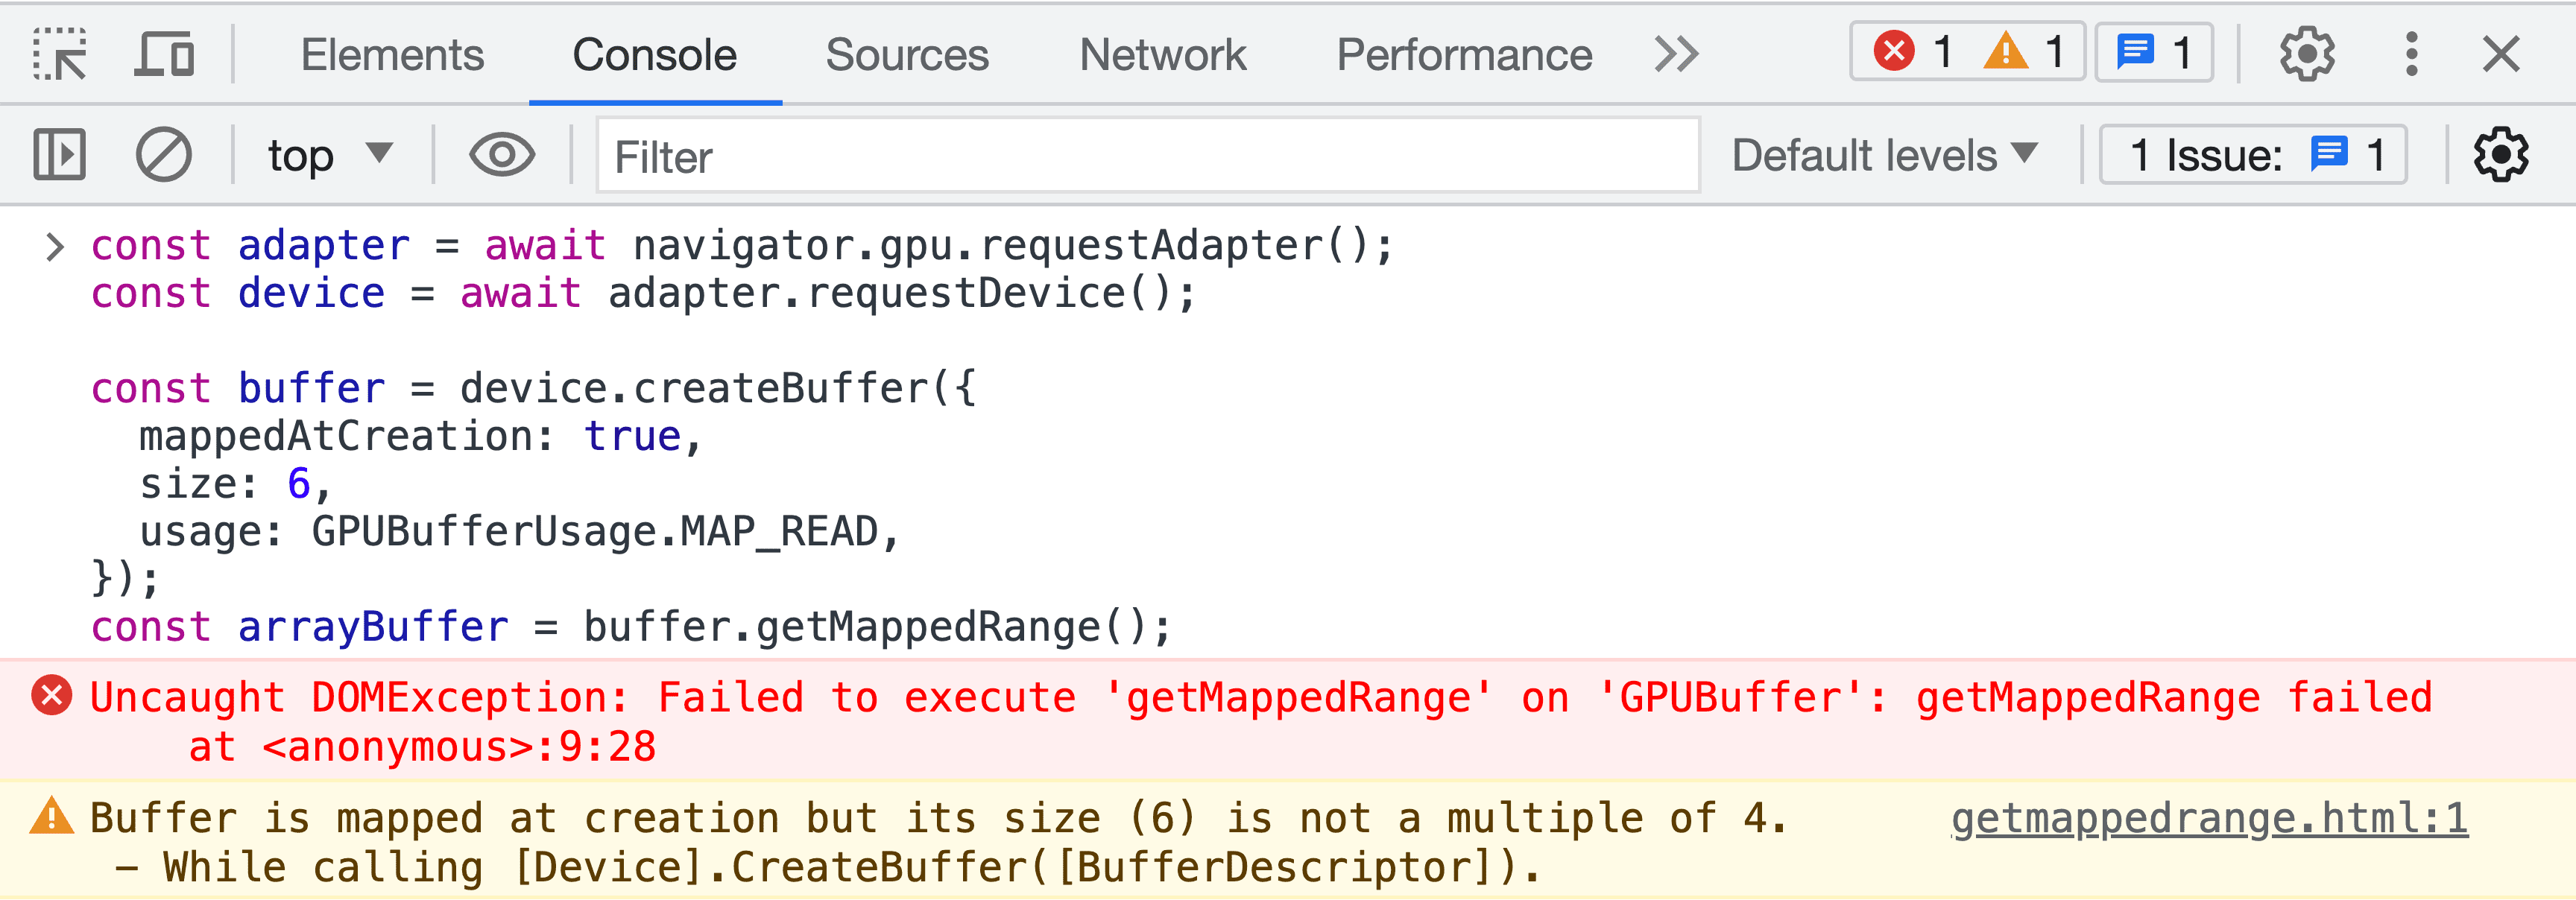 버퍼 유효성 검사 오류 메시지가 표시된 DevTools JavaScript 콘솔의 스크린샷